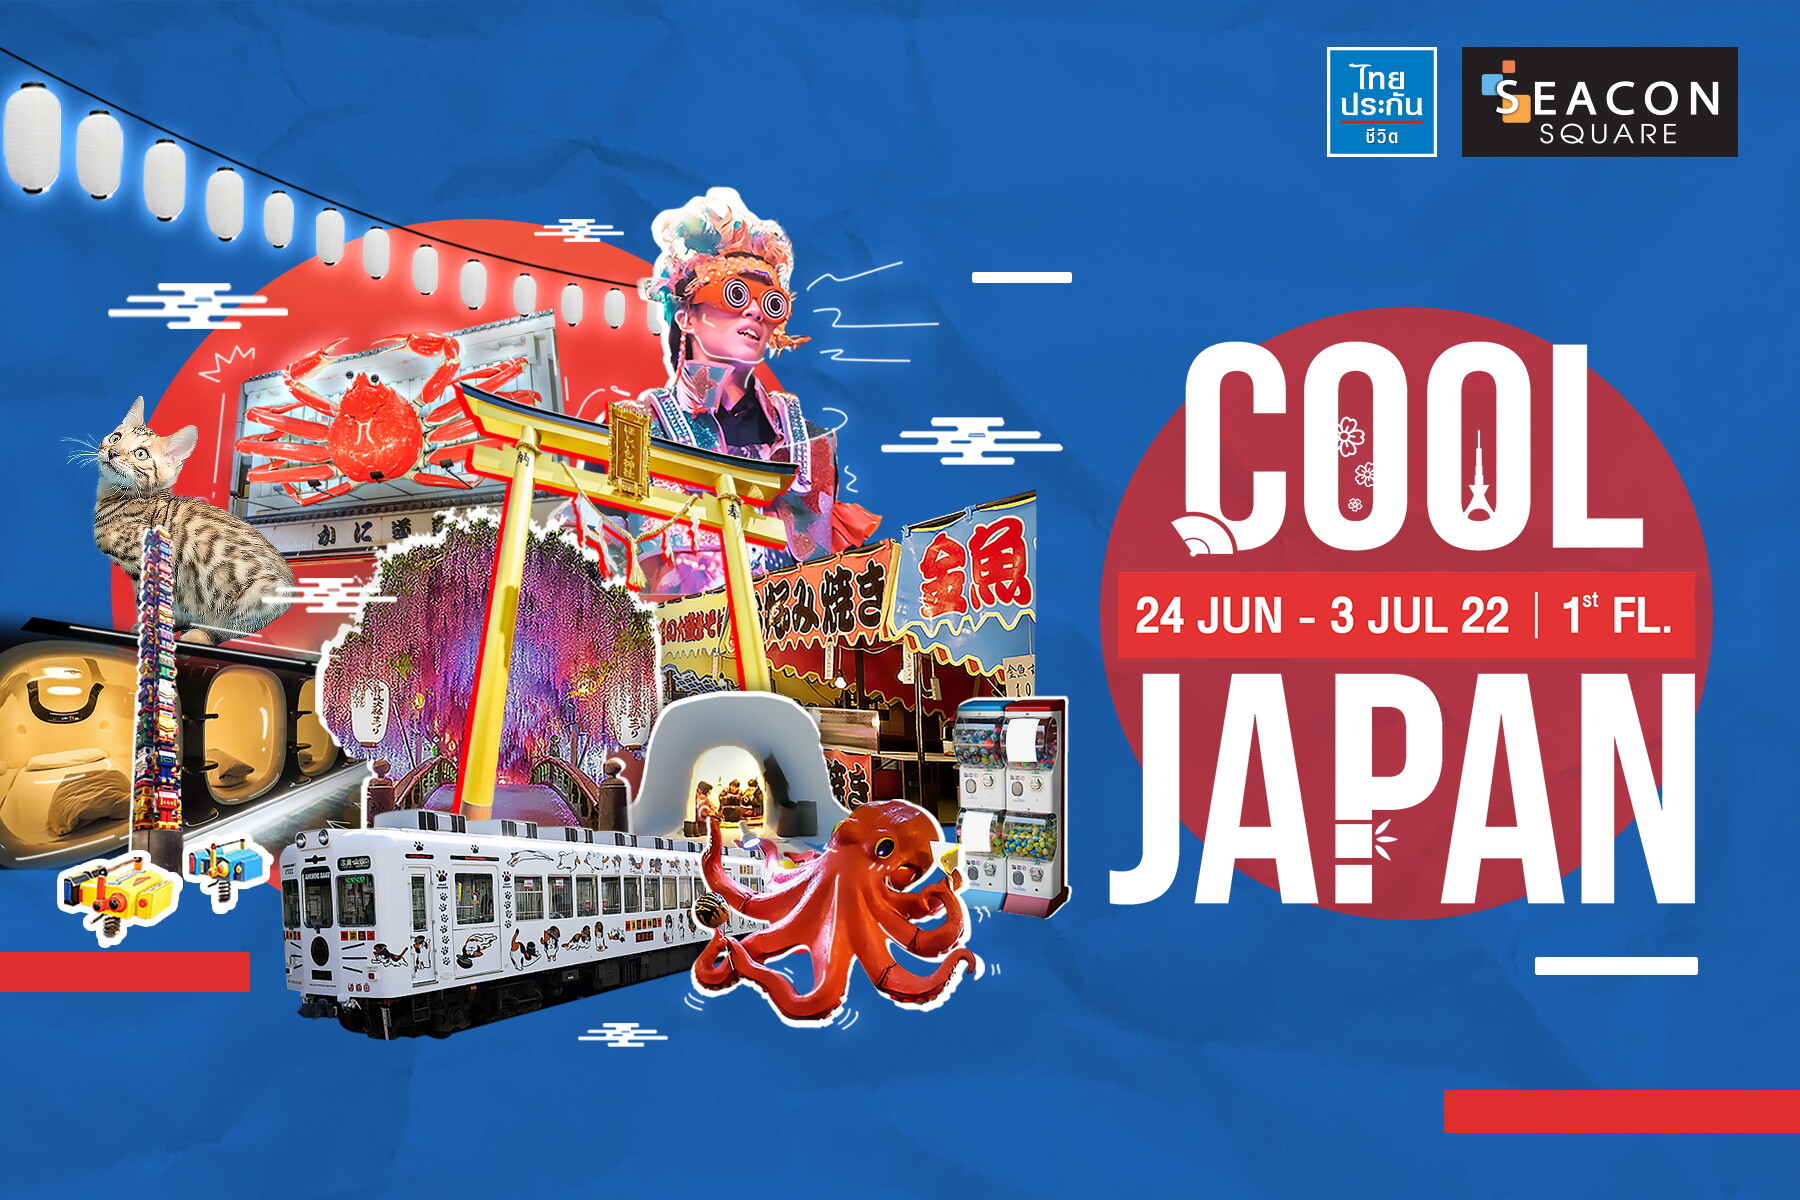 24 มิถุนายน - 3 กรกฎาคม นี้ ซีคอนสแควร์ ร่วมกับ บริษัทไทยประกันชีวิต ชวนเที่ยวญี่ปุ่นแบบคูล คูล!!